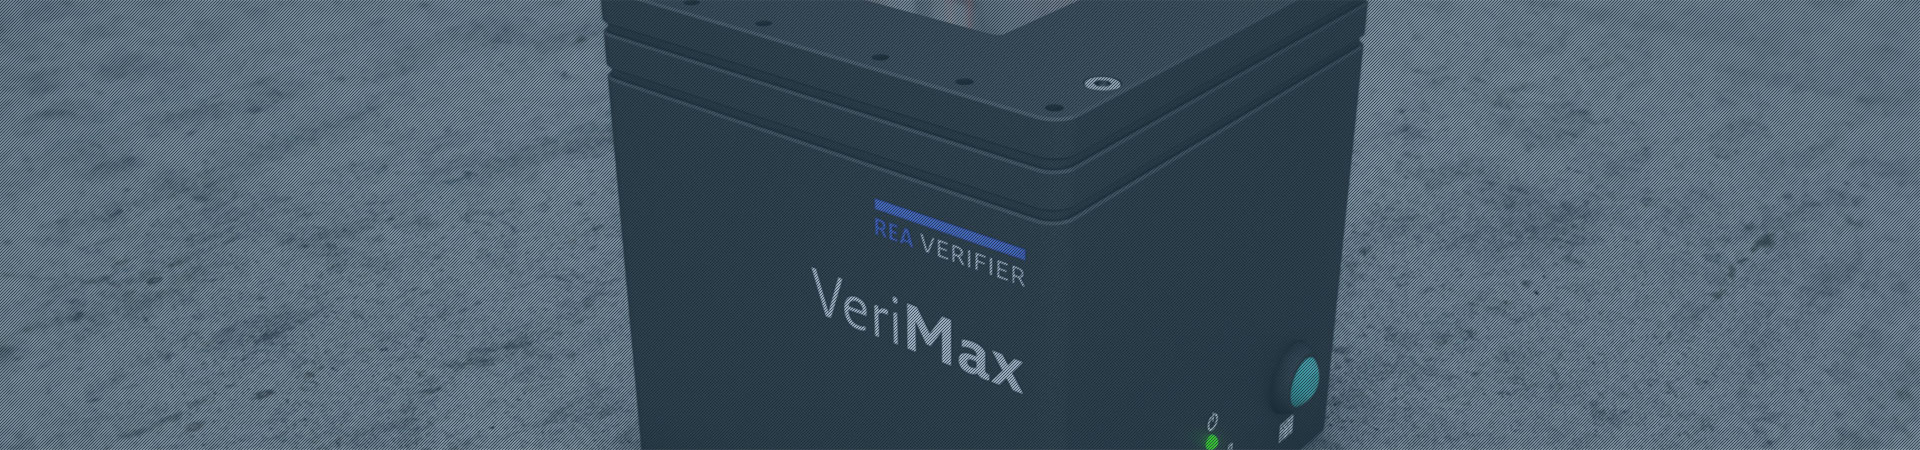 Verifier for machine integration - REA VERIFIER VeriMax